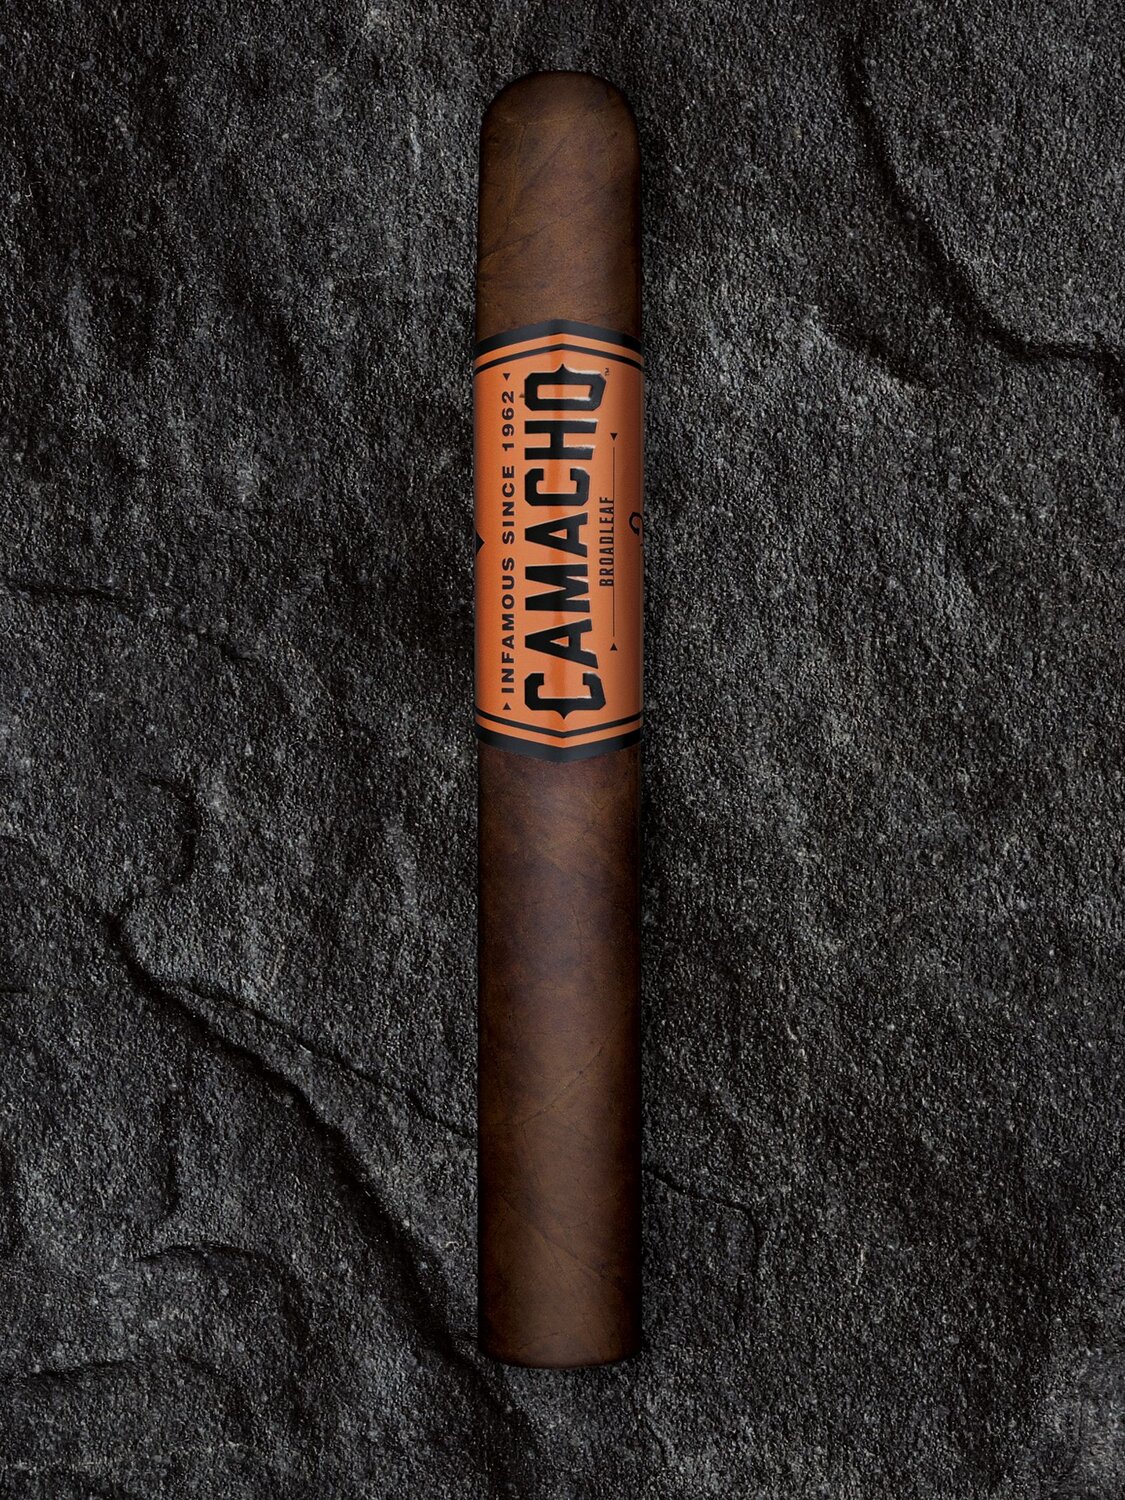 Camacho Broadleaf Cigar on a rock